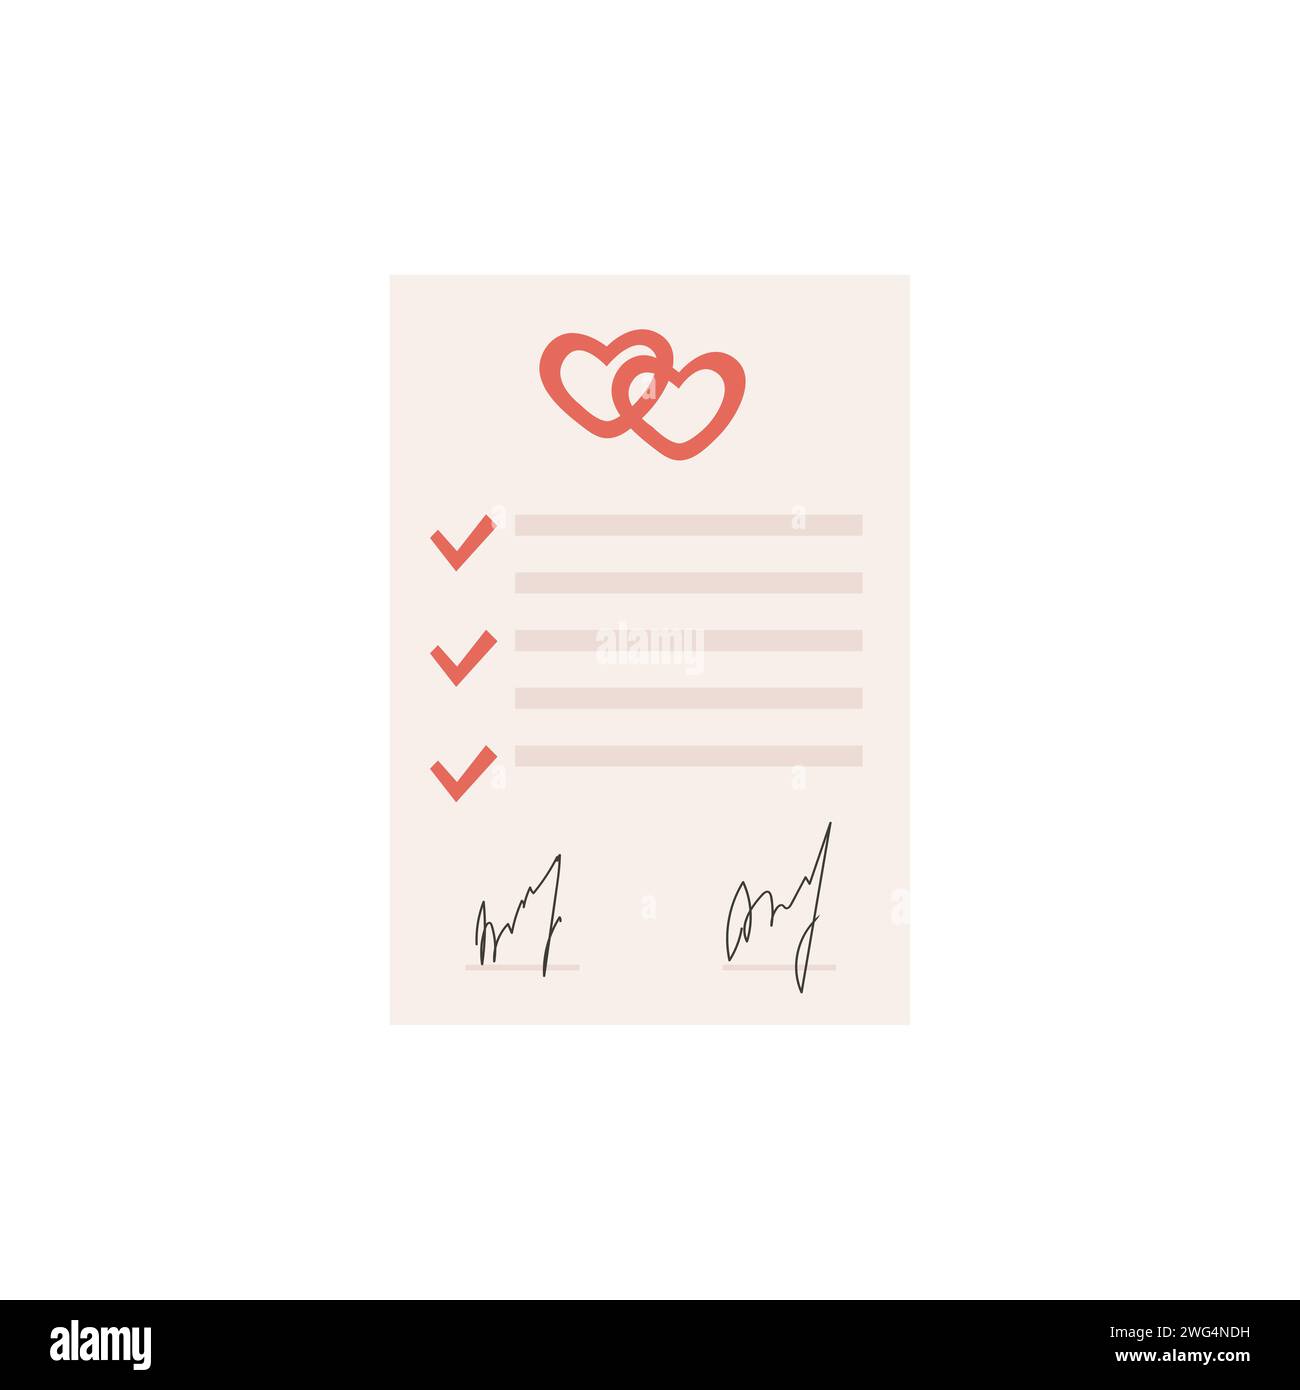 Farbiges Symbol für den Heiratsvertrag. Vorab signiertes Zertifikat. Formular zur Ehevereinbarung mit Häkchen, zwei Herzen und Unterschrift. Scheidung Stock Vektor